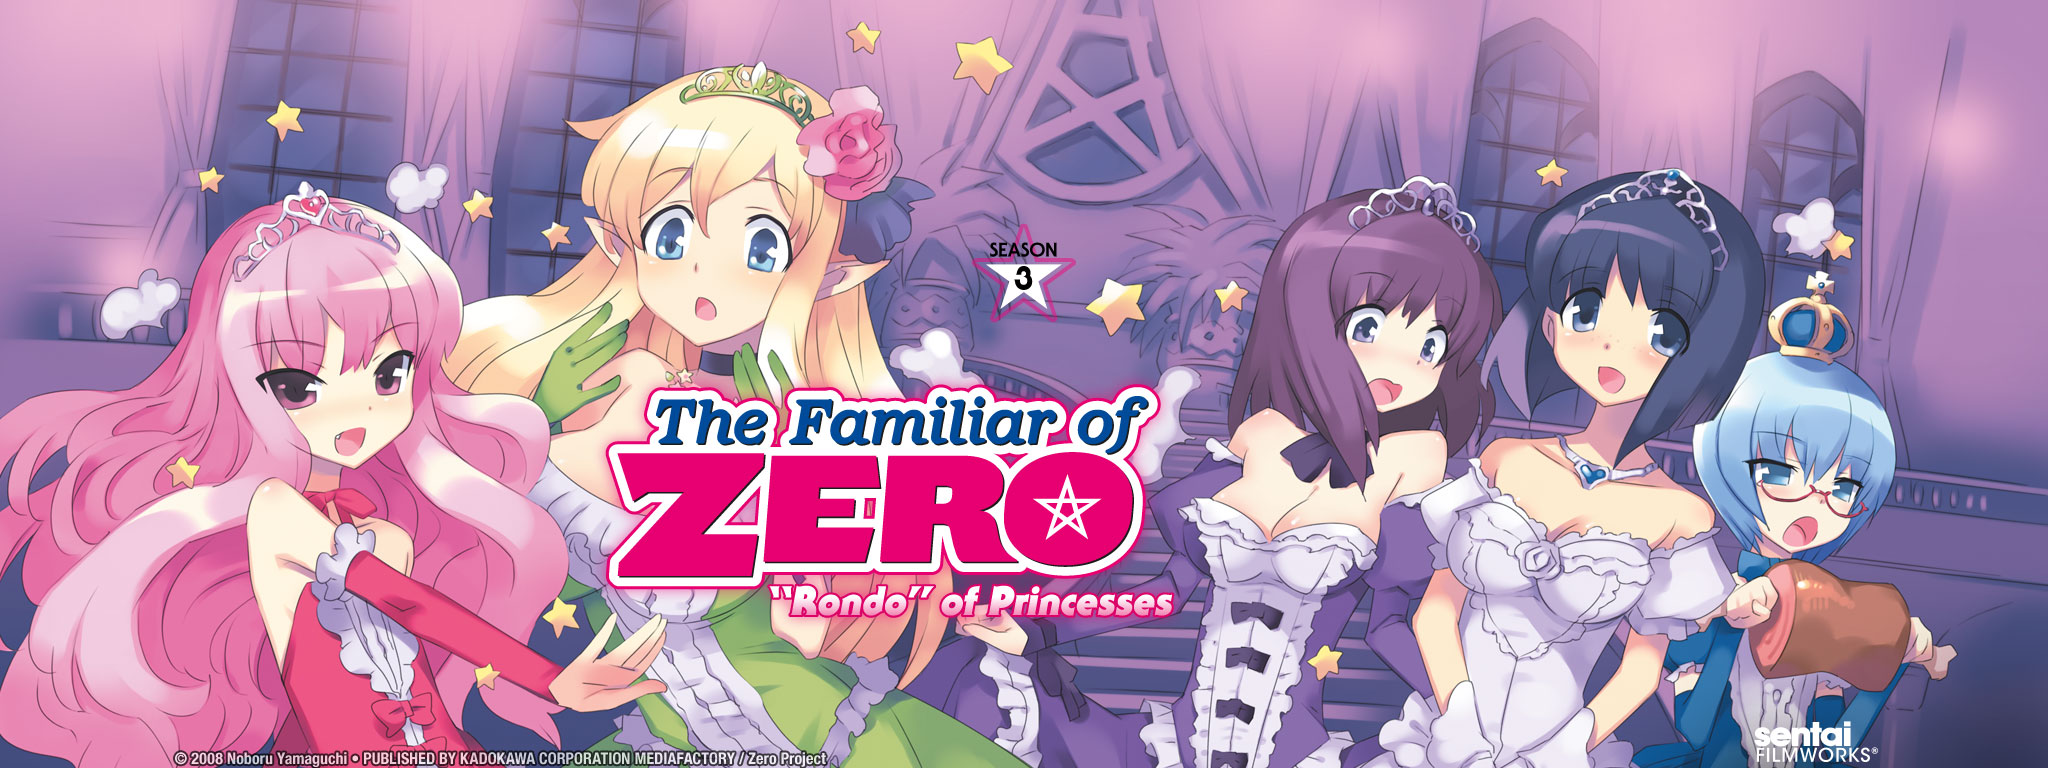 Title Art for The Familiar of Zero: "Rondo" of Princesses